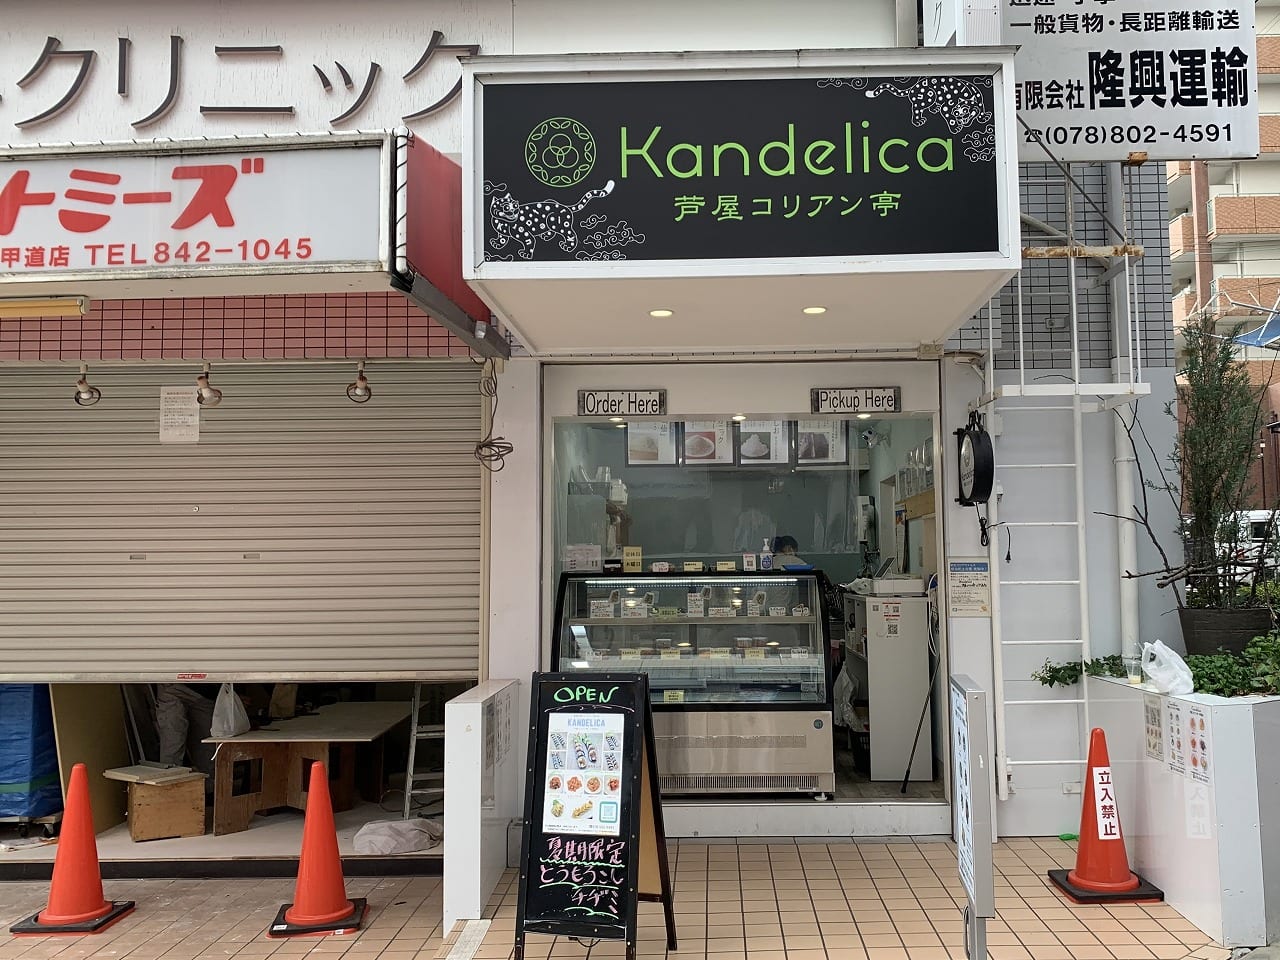 カンデリカ芦屋コリアン亭 六甲道店